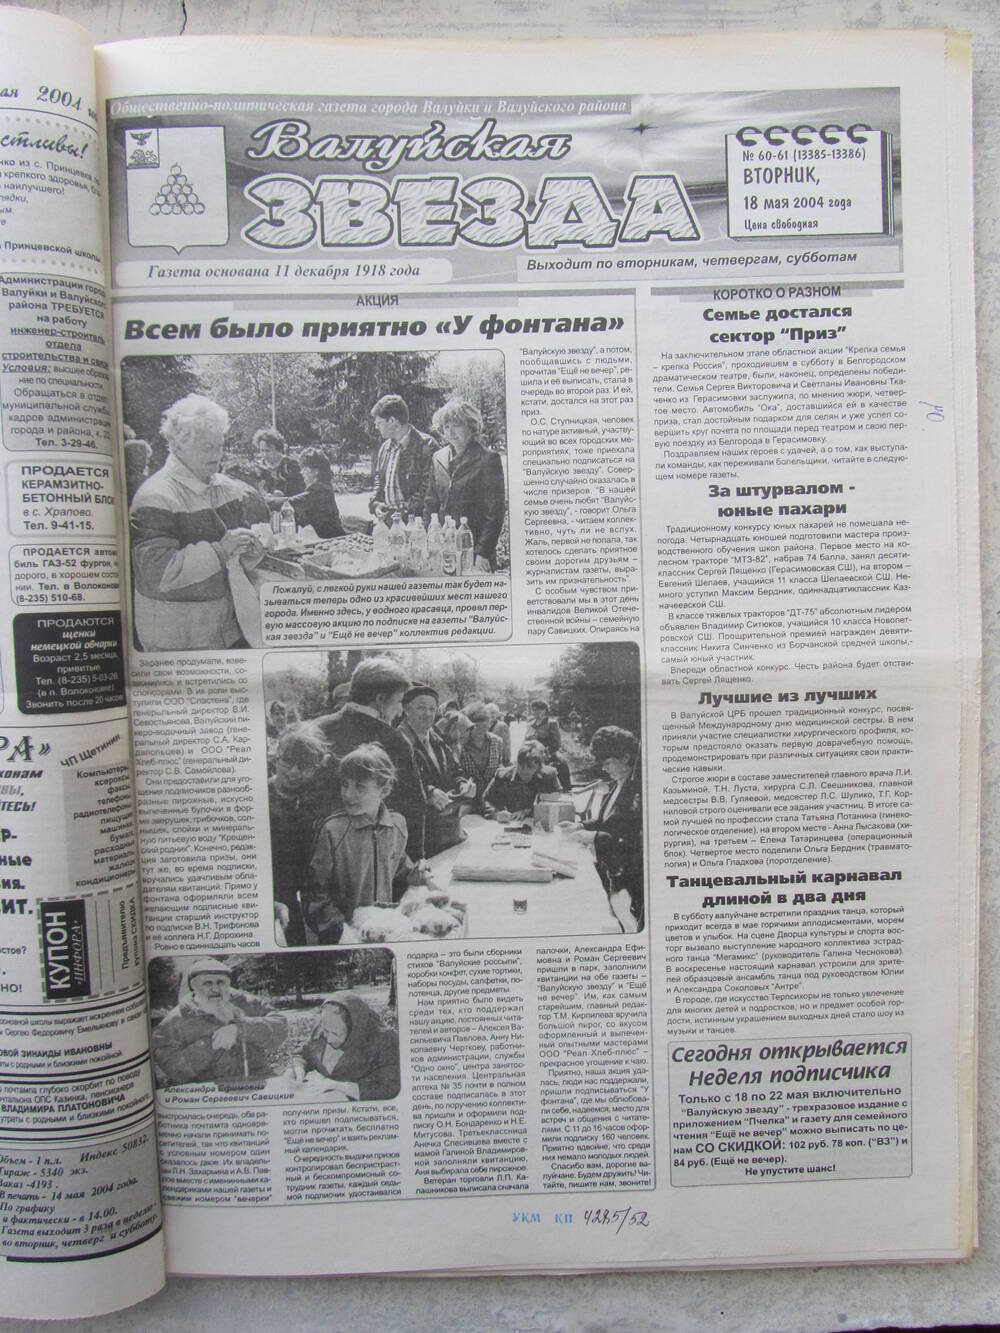 Газета Валуйская звезда №60-61 от 18.05.2004 г